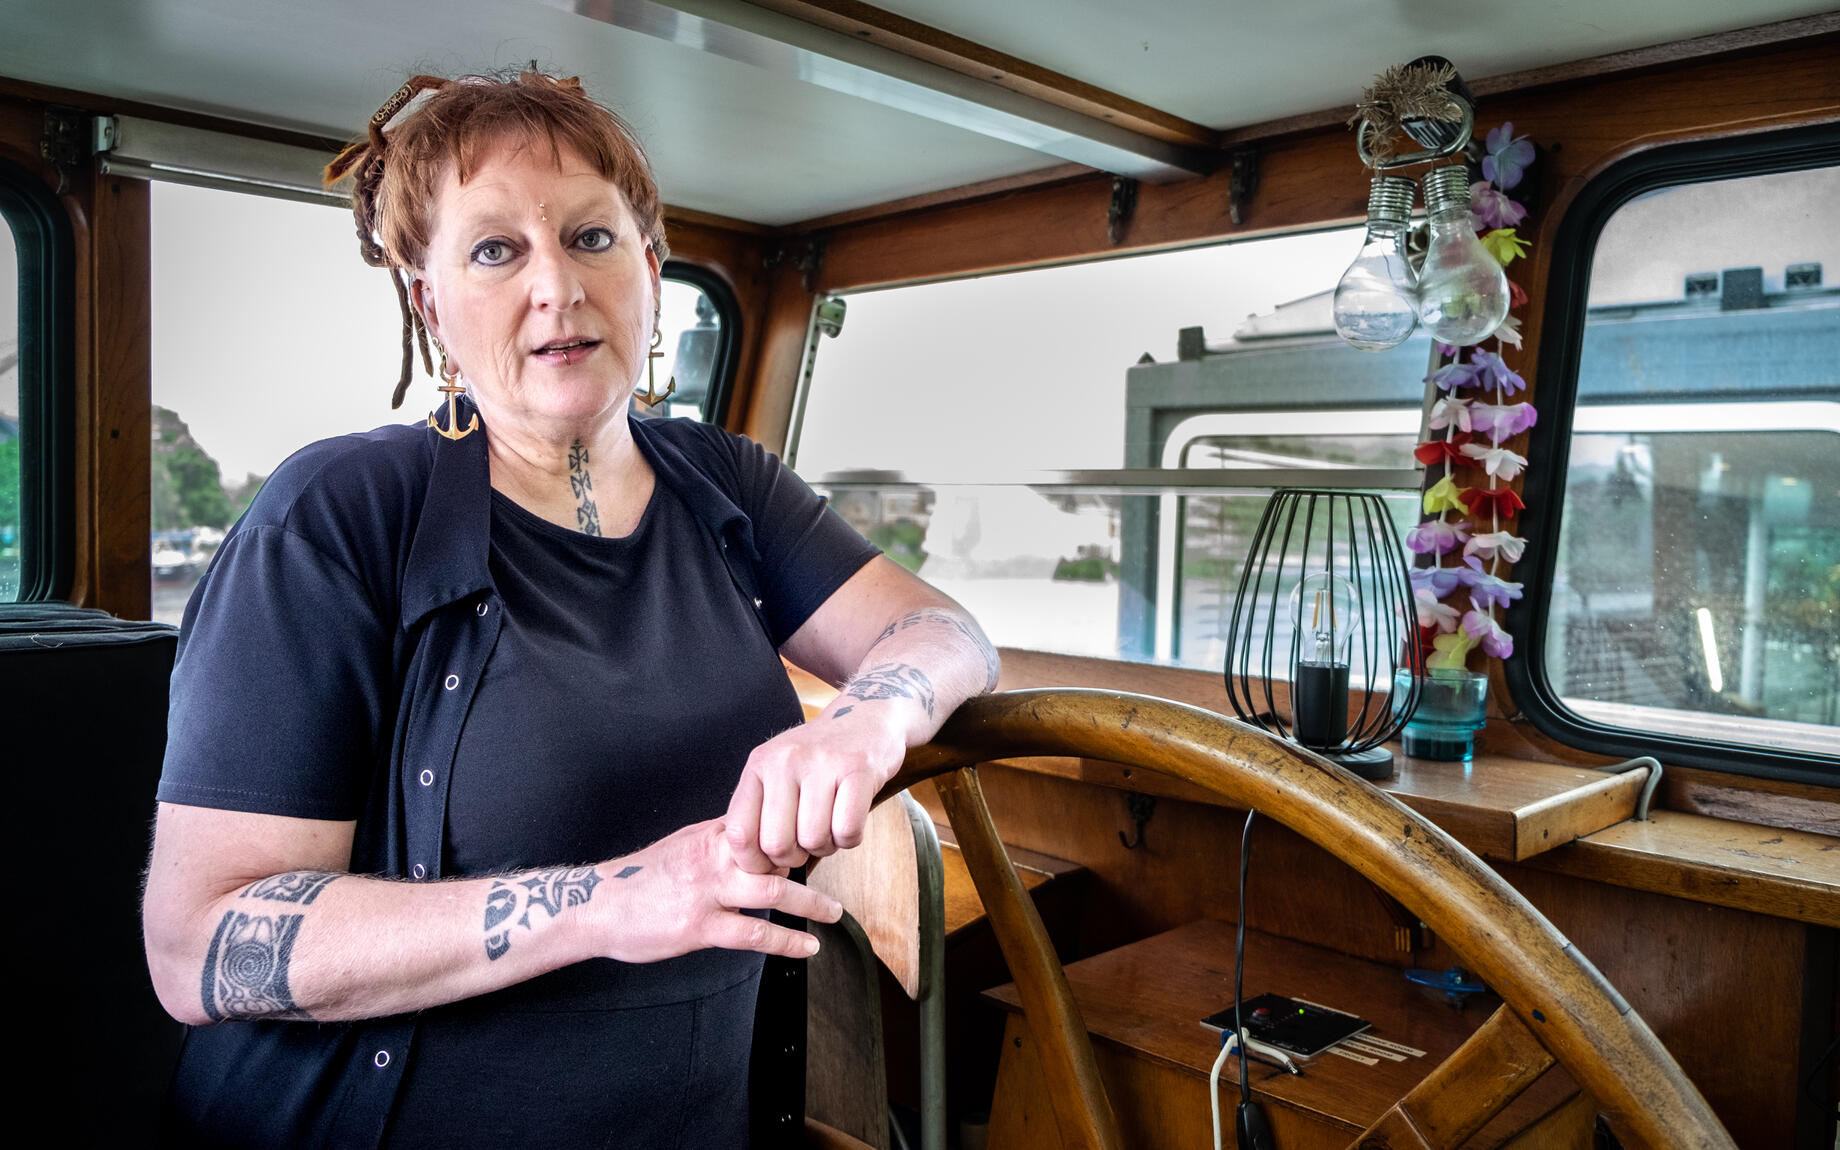 Ook Hetty, die een piercingatelier heeft in haar woonboot, heeft heel wat verhalen over de buurt